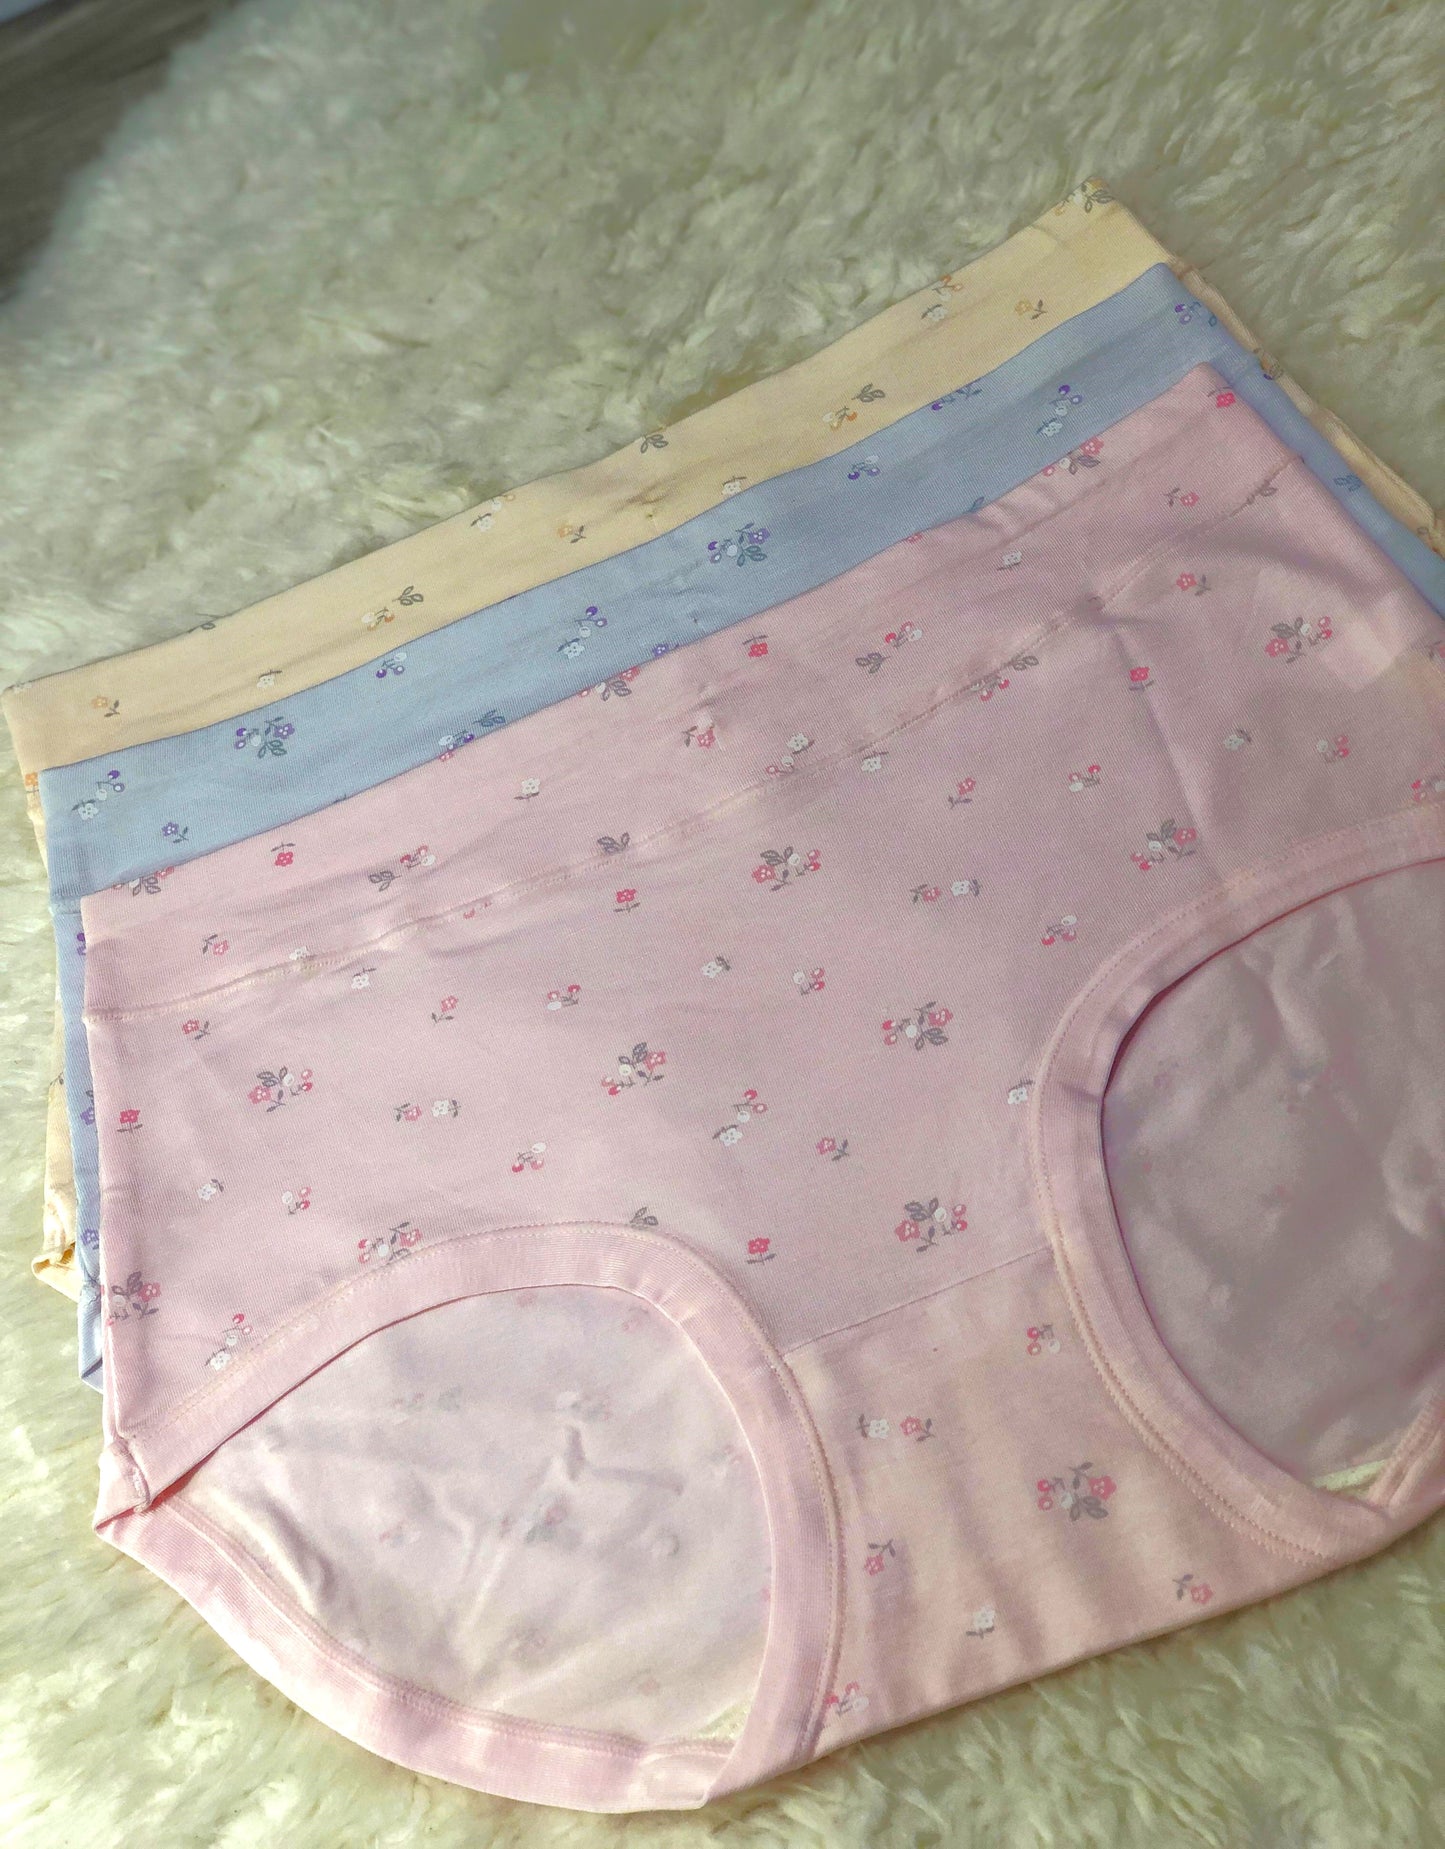 Sajiero KWO Flower Print Soft Cotton Panty best qualiy summer panties for ladies price in Pakistan online